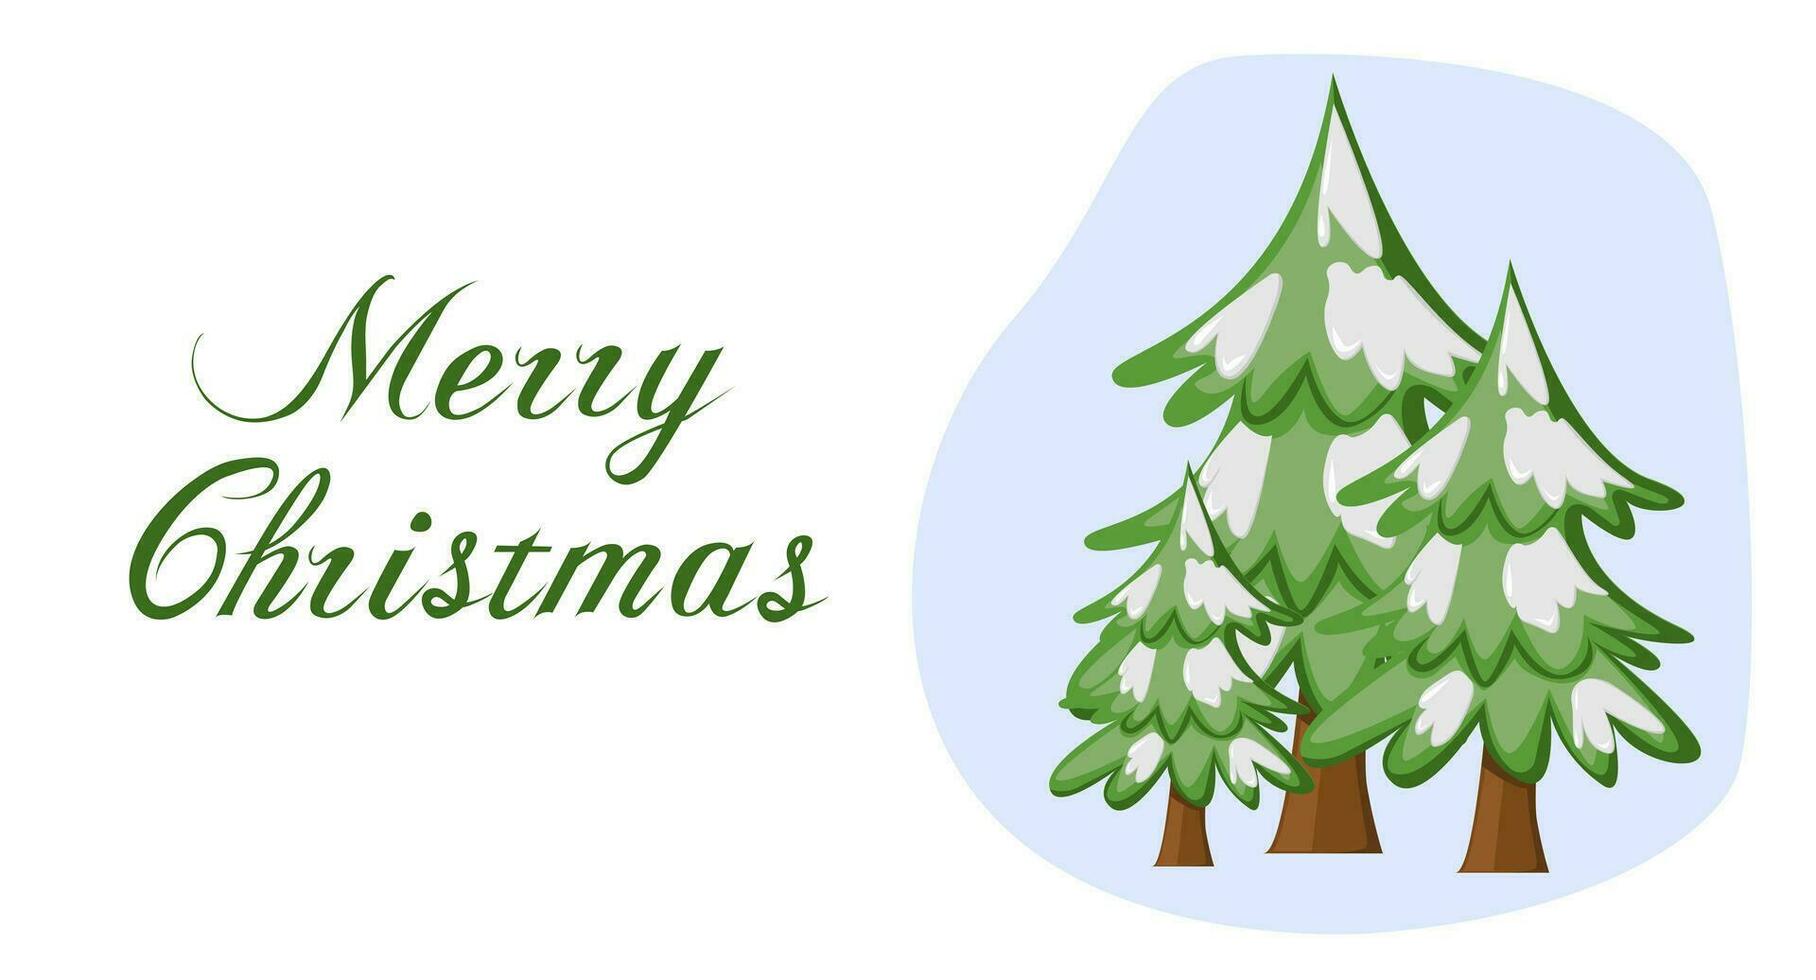 Kerstmis kaart in vlak stijl. Spar boom en tekst vrolijk kerstmis. opschrift voor ansichtkaart, uitnodiging, poster, banier vector